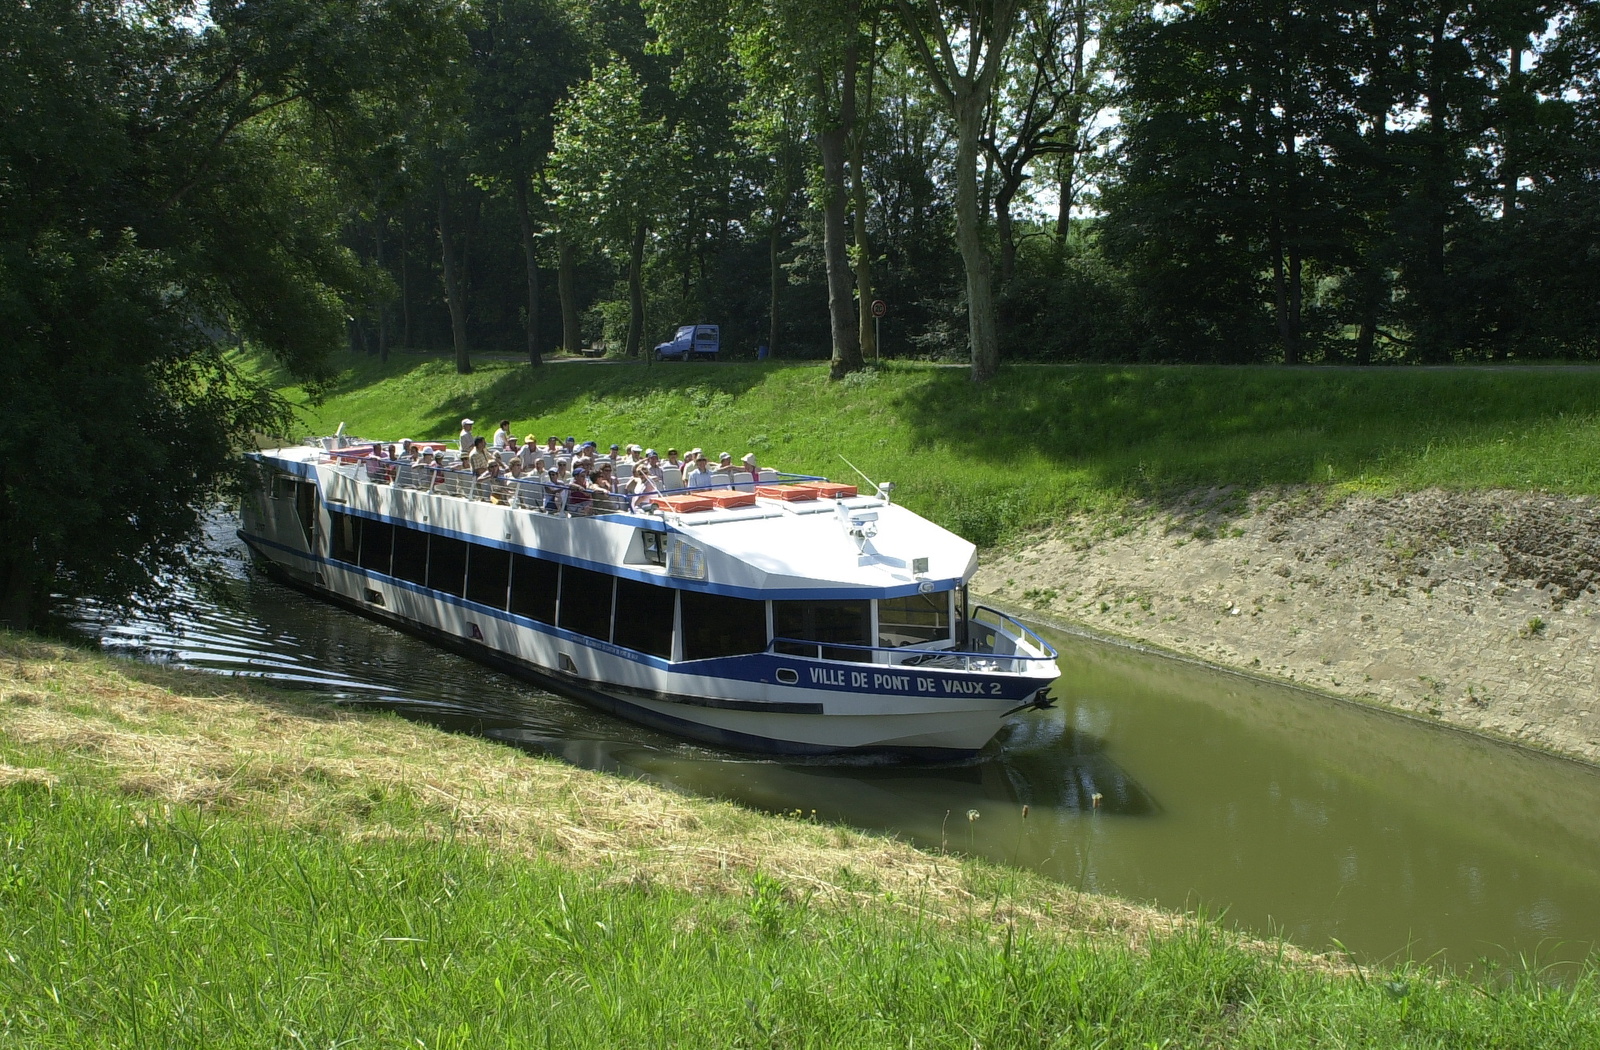 Croisière sur la canal de Pont-de-Vaux en groupe